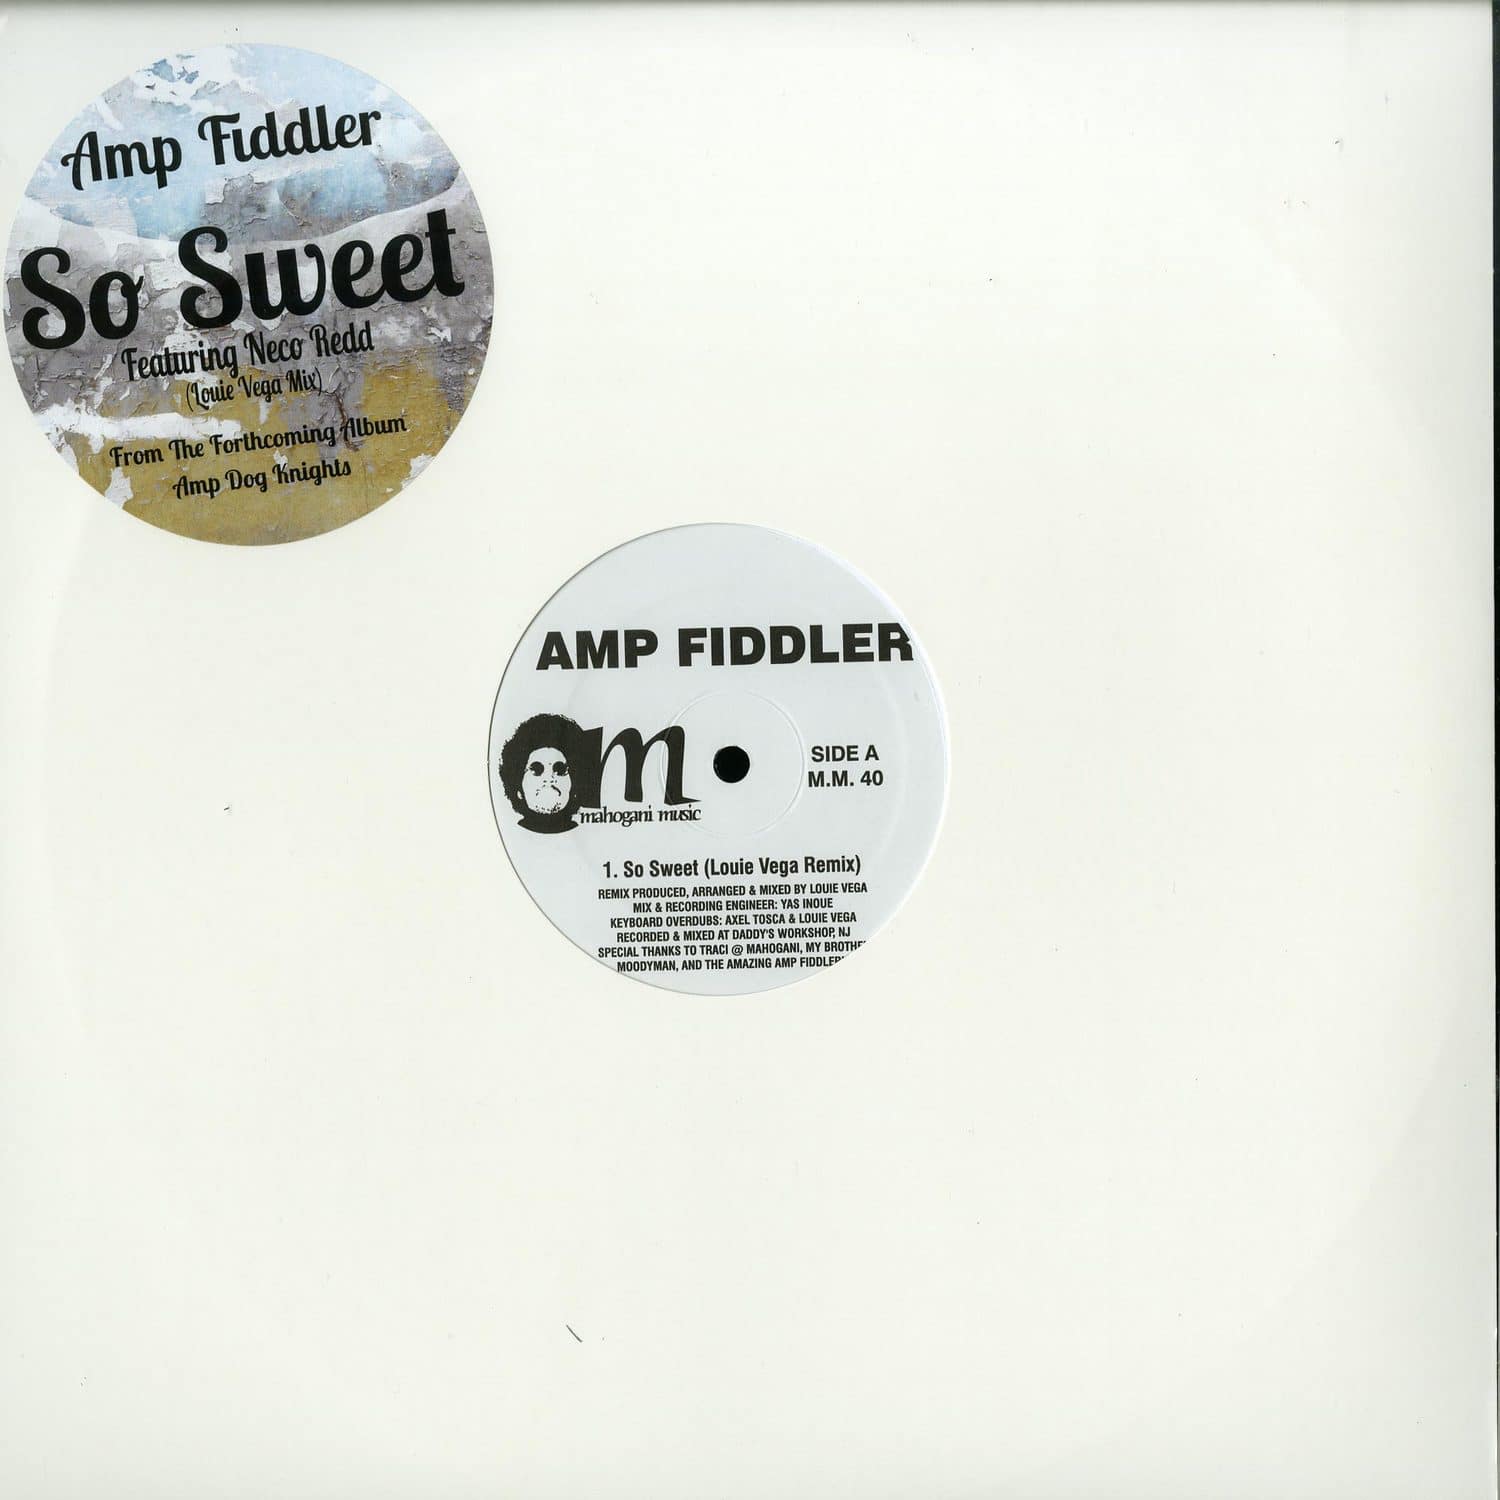 Amp Fiddler - SO SWEET